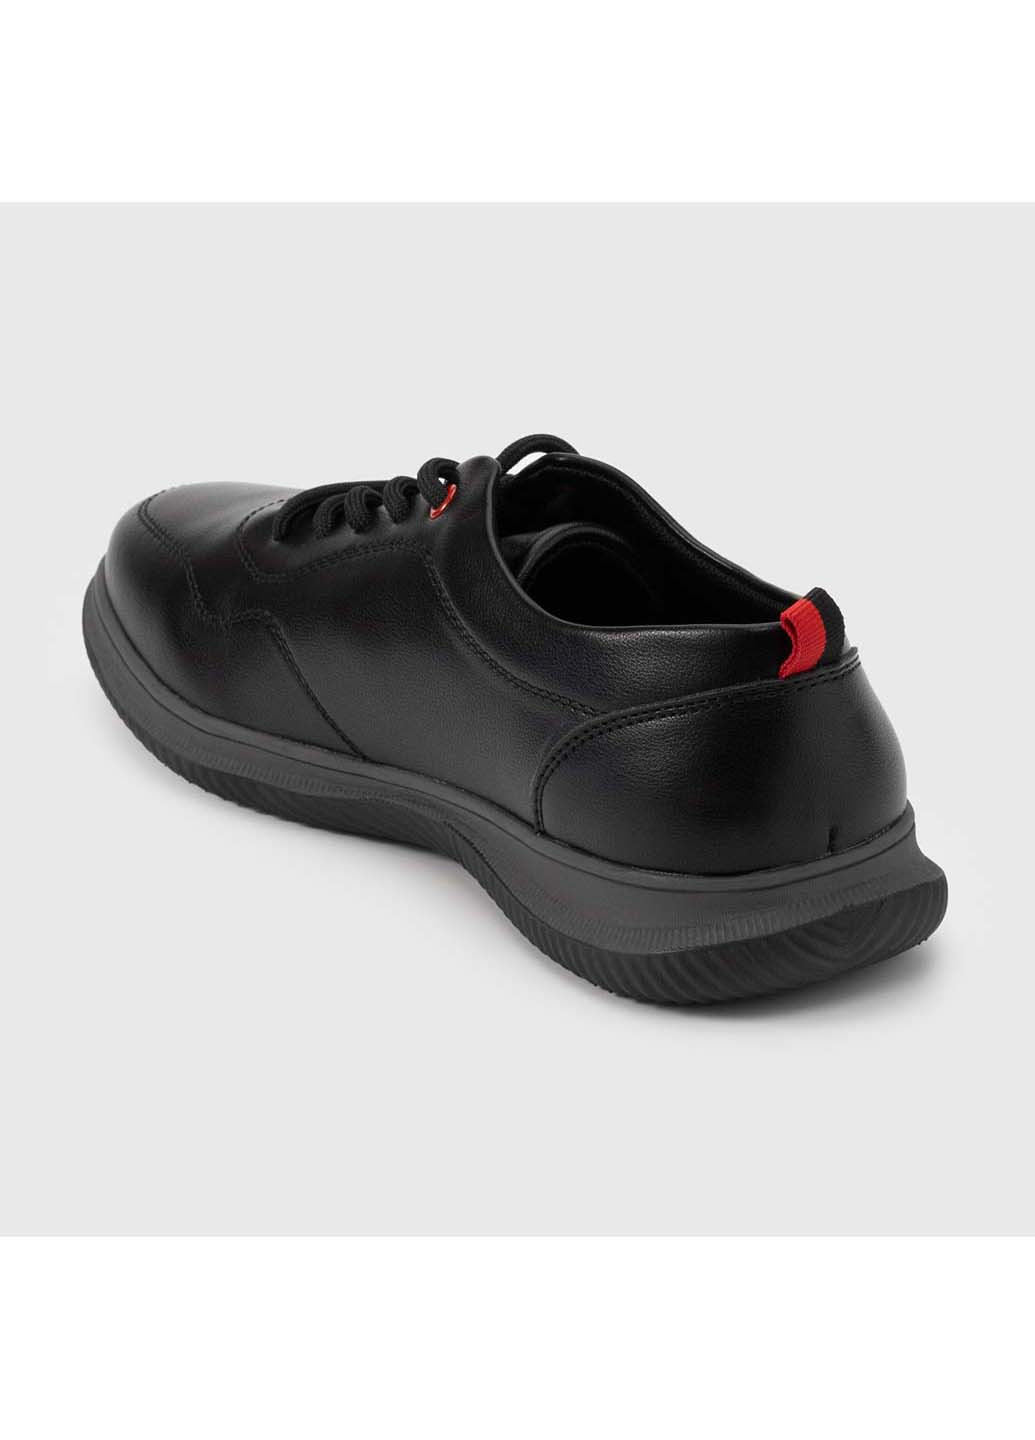 Черные туфли Kulada